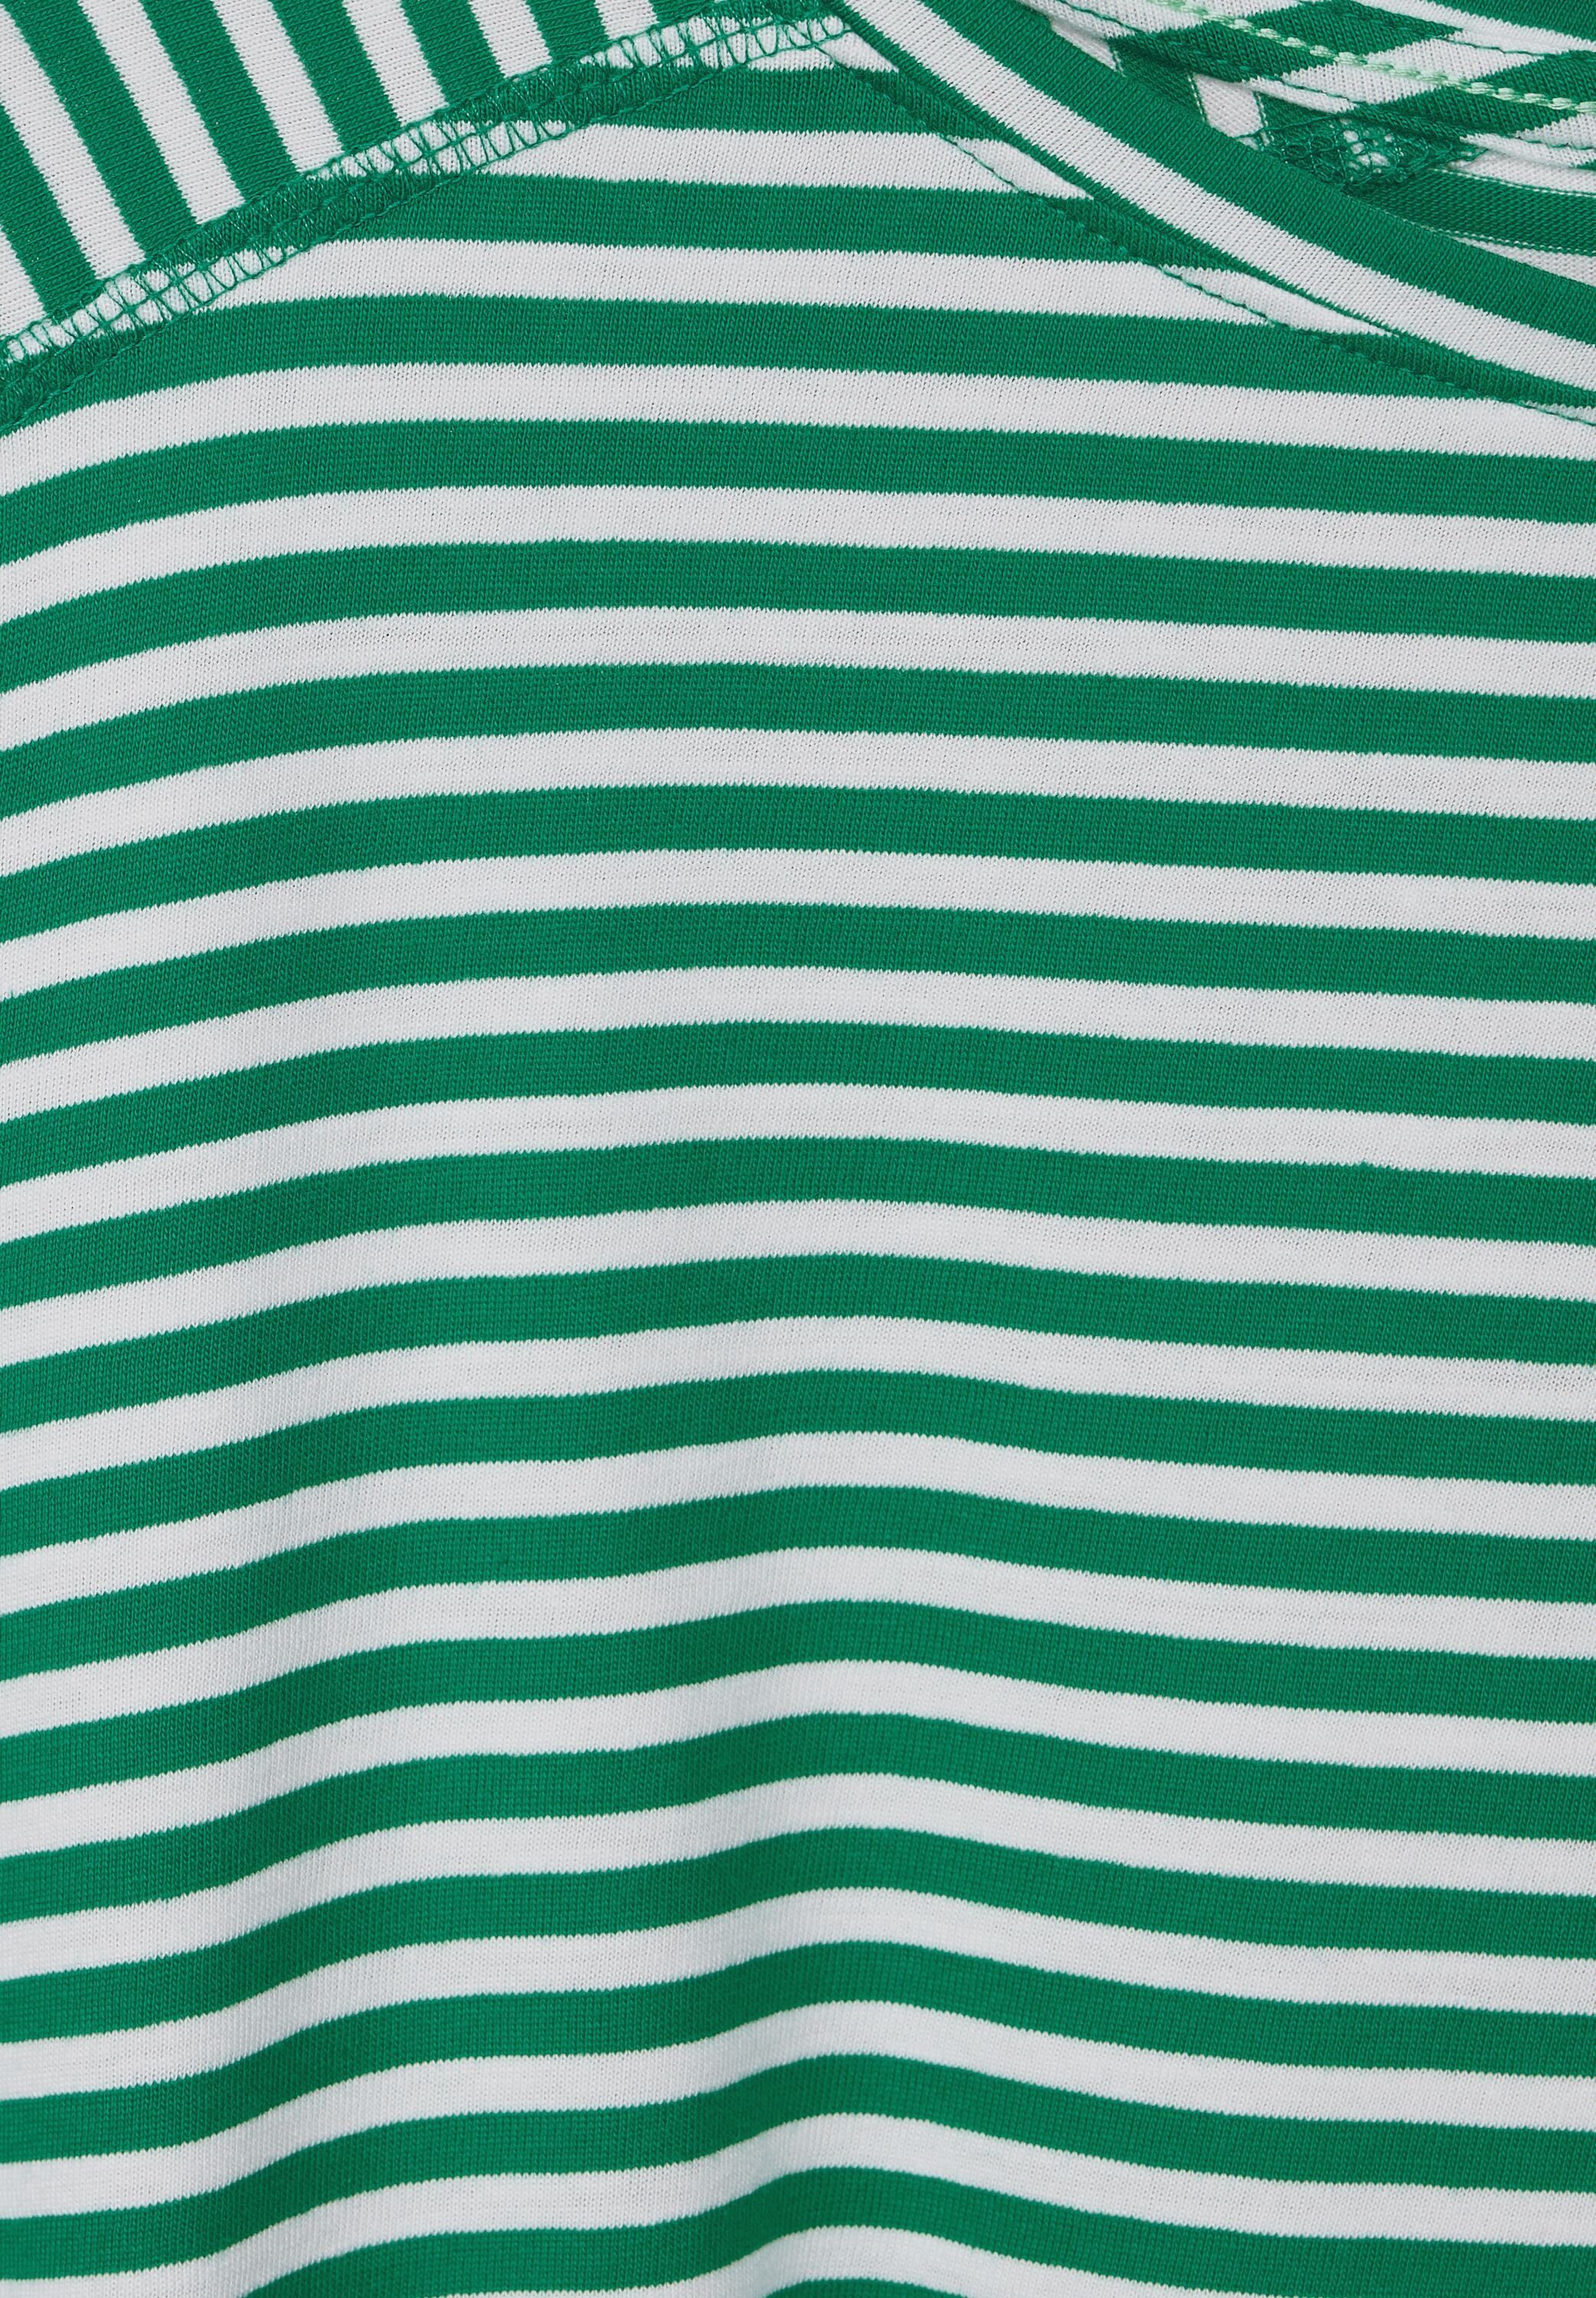 Cecil 3/4-Arm-Shirt mit luscious green U-Boot-Ausschnitt